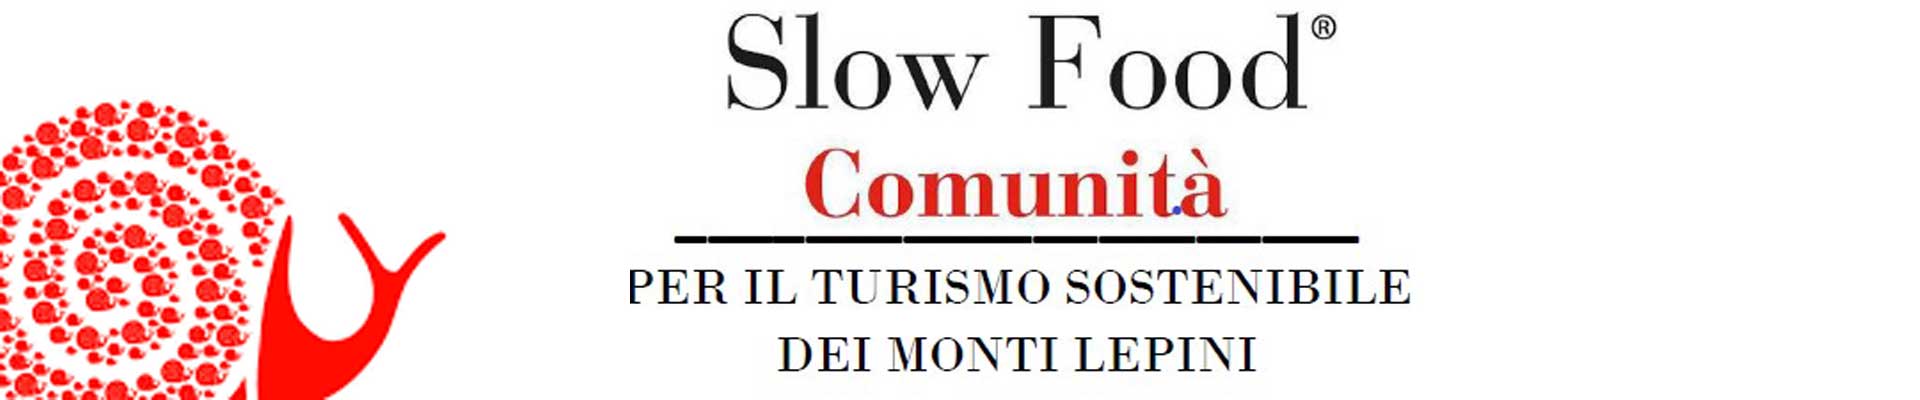 comunita-slow-food-dei-monti-lepini